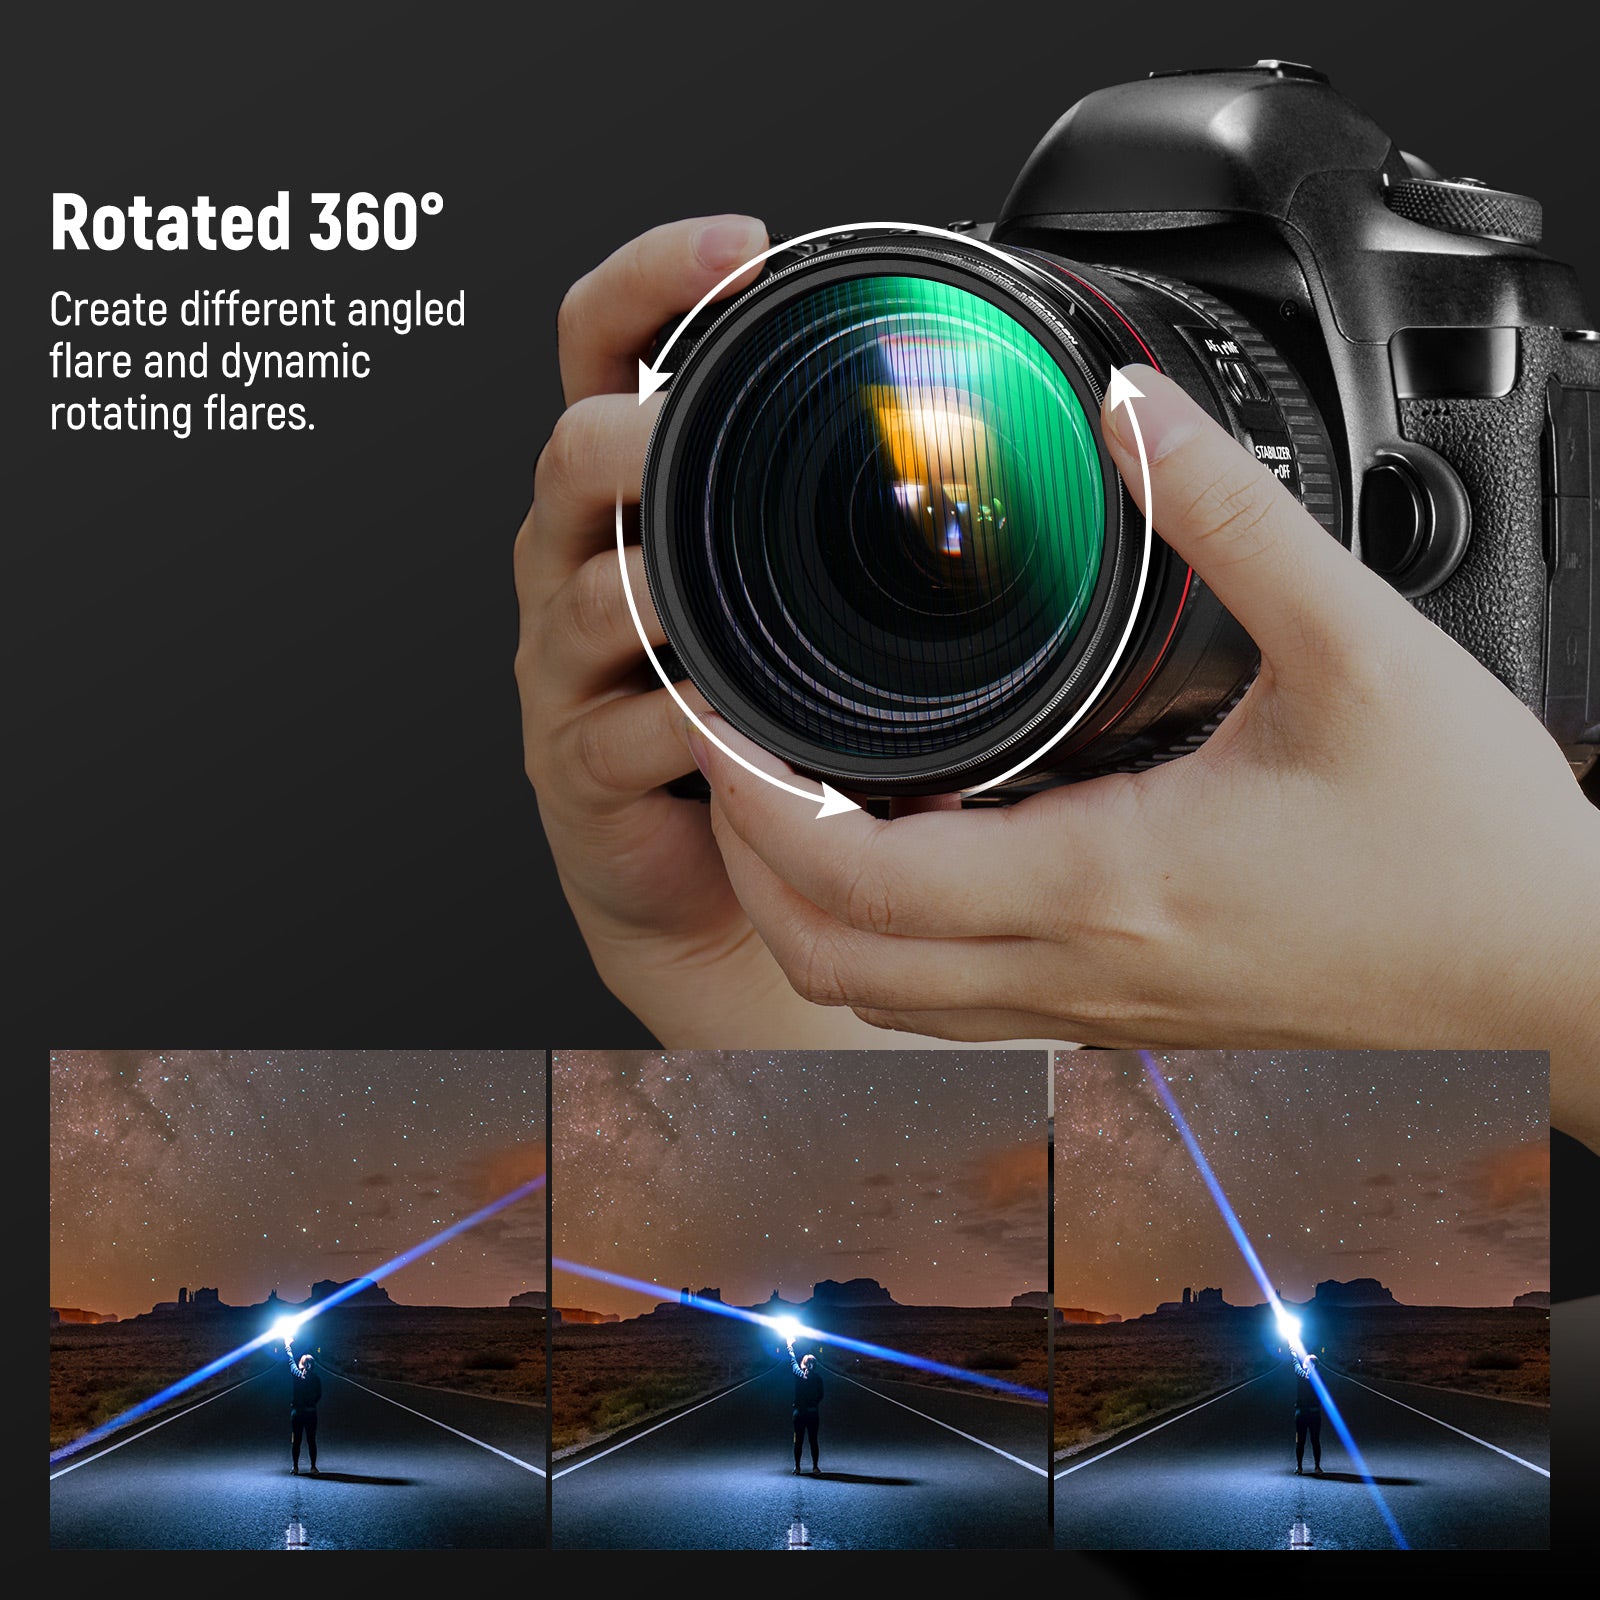 Fdit Filtre caméra Blue Streak Filtre à effets spéciaux Junestar Blue  Streak avec accessoires pour appareil photo à cadre en